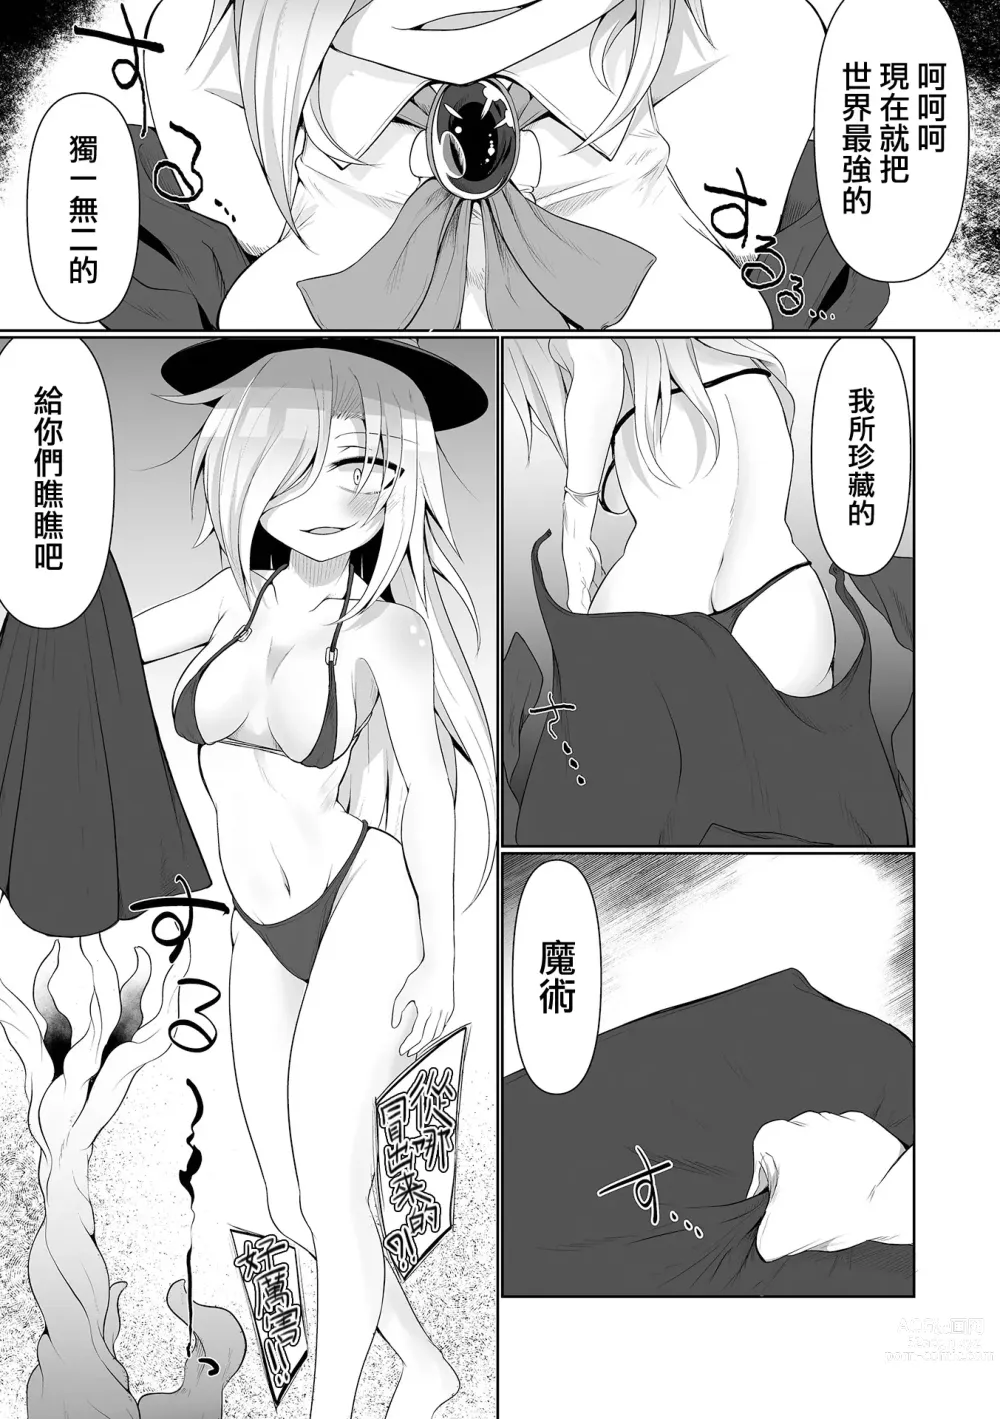 Page 4 of manga 觸手魔術秀